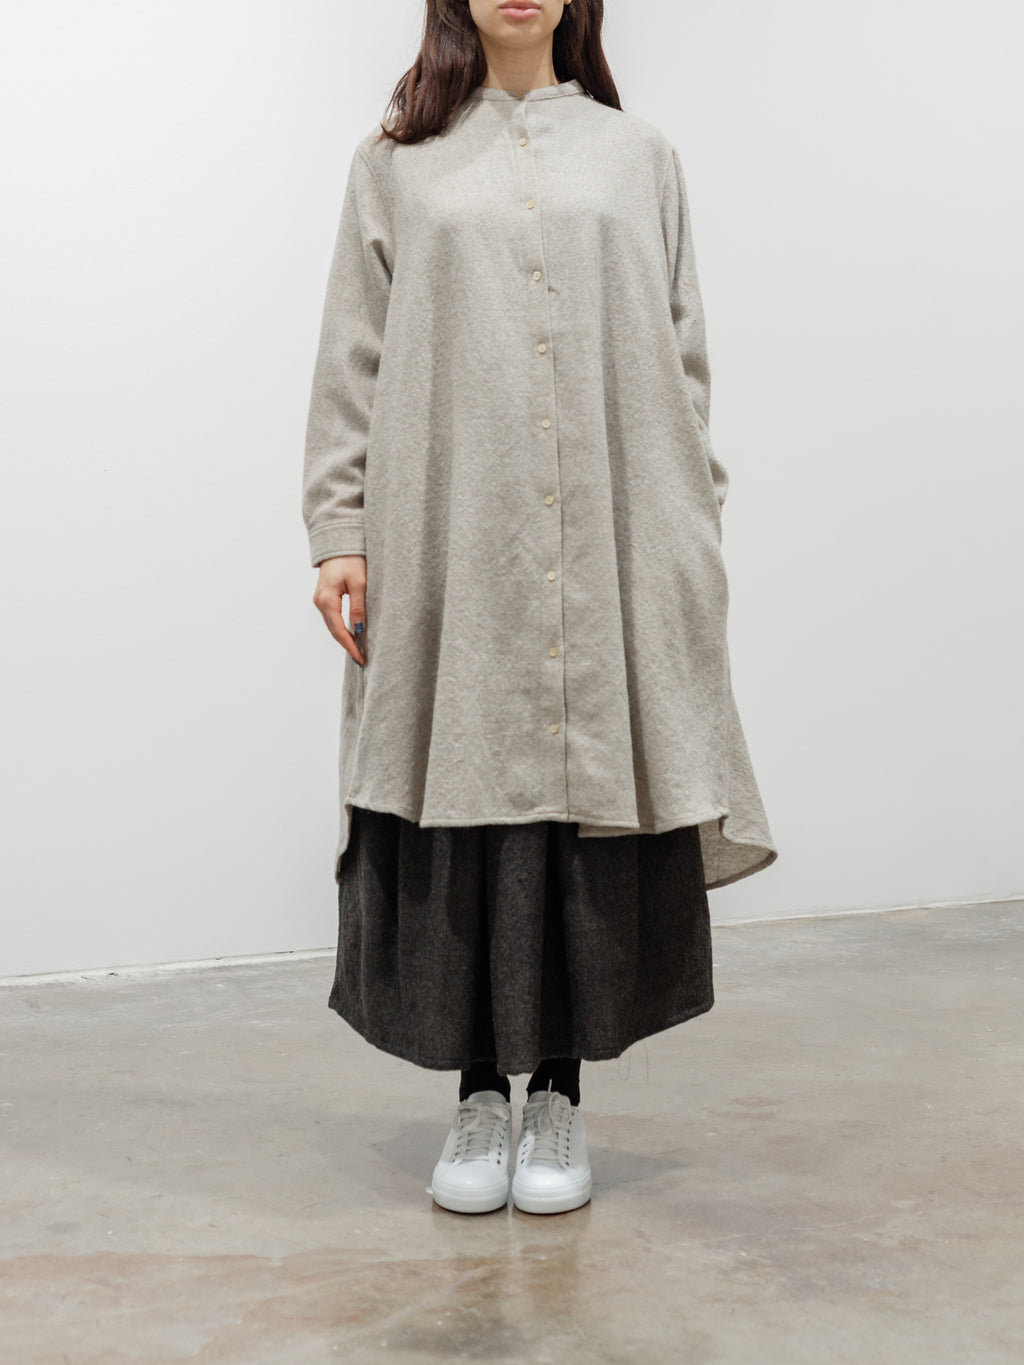 Namu Shop - ICHI Wool Long Shirt - Beige